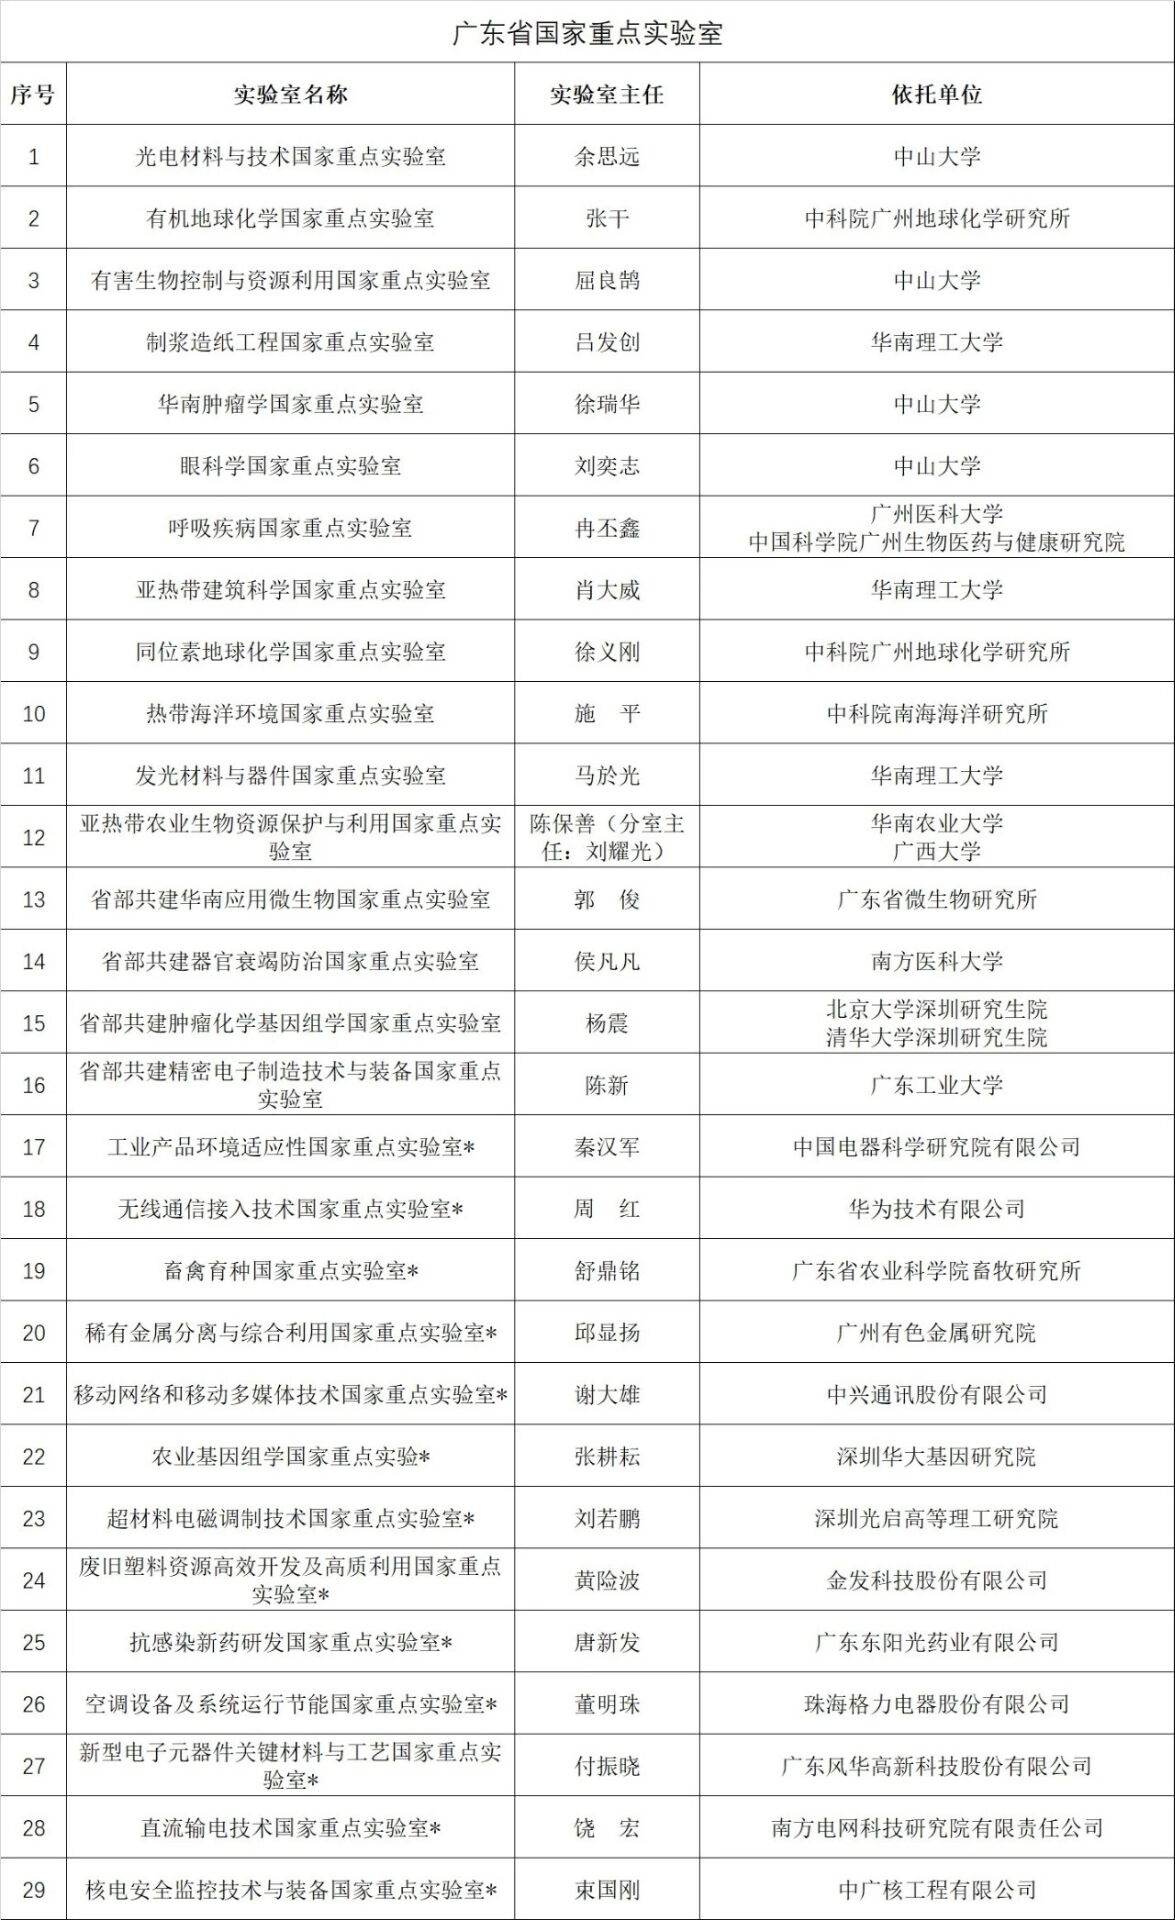 广东省国家重点实验室名单